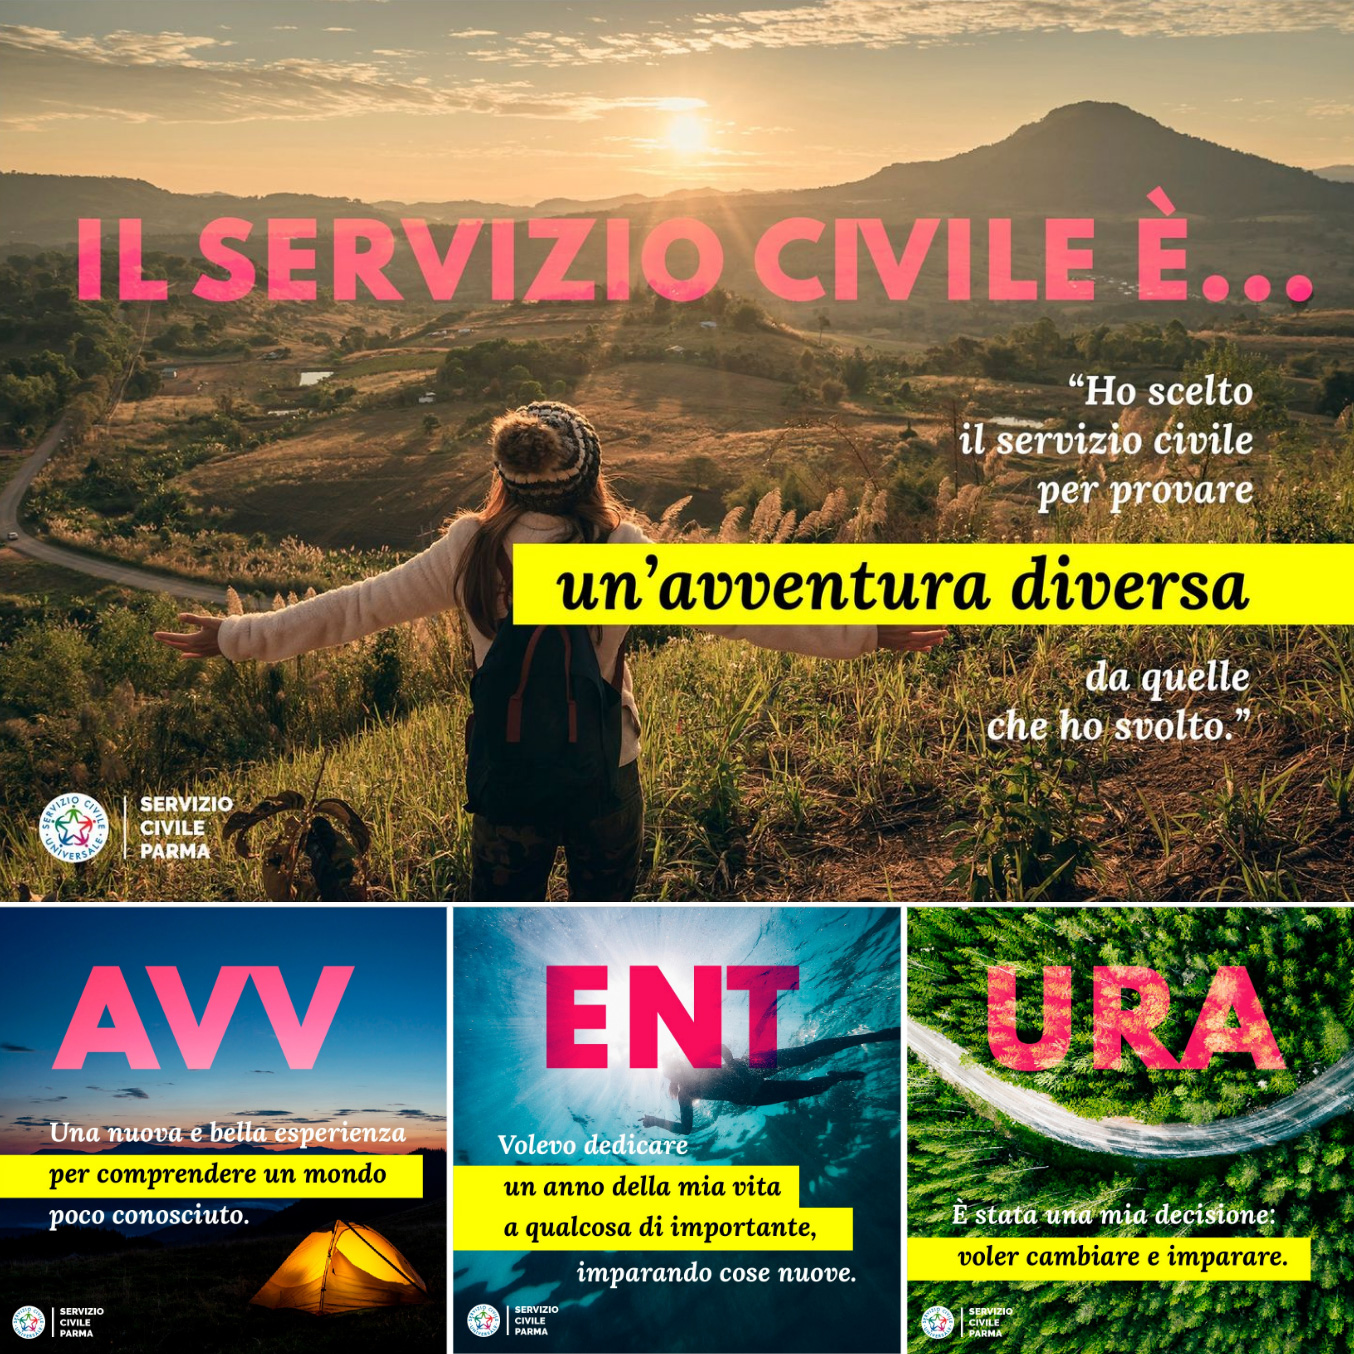 http://www.serviziocivileparma.it/web/il-servizio-civile-e-avventura/